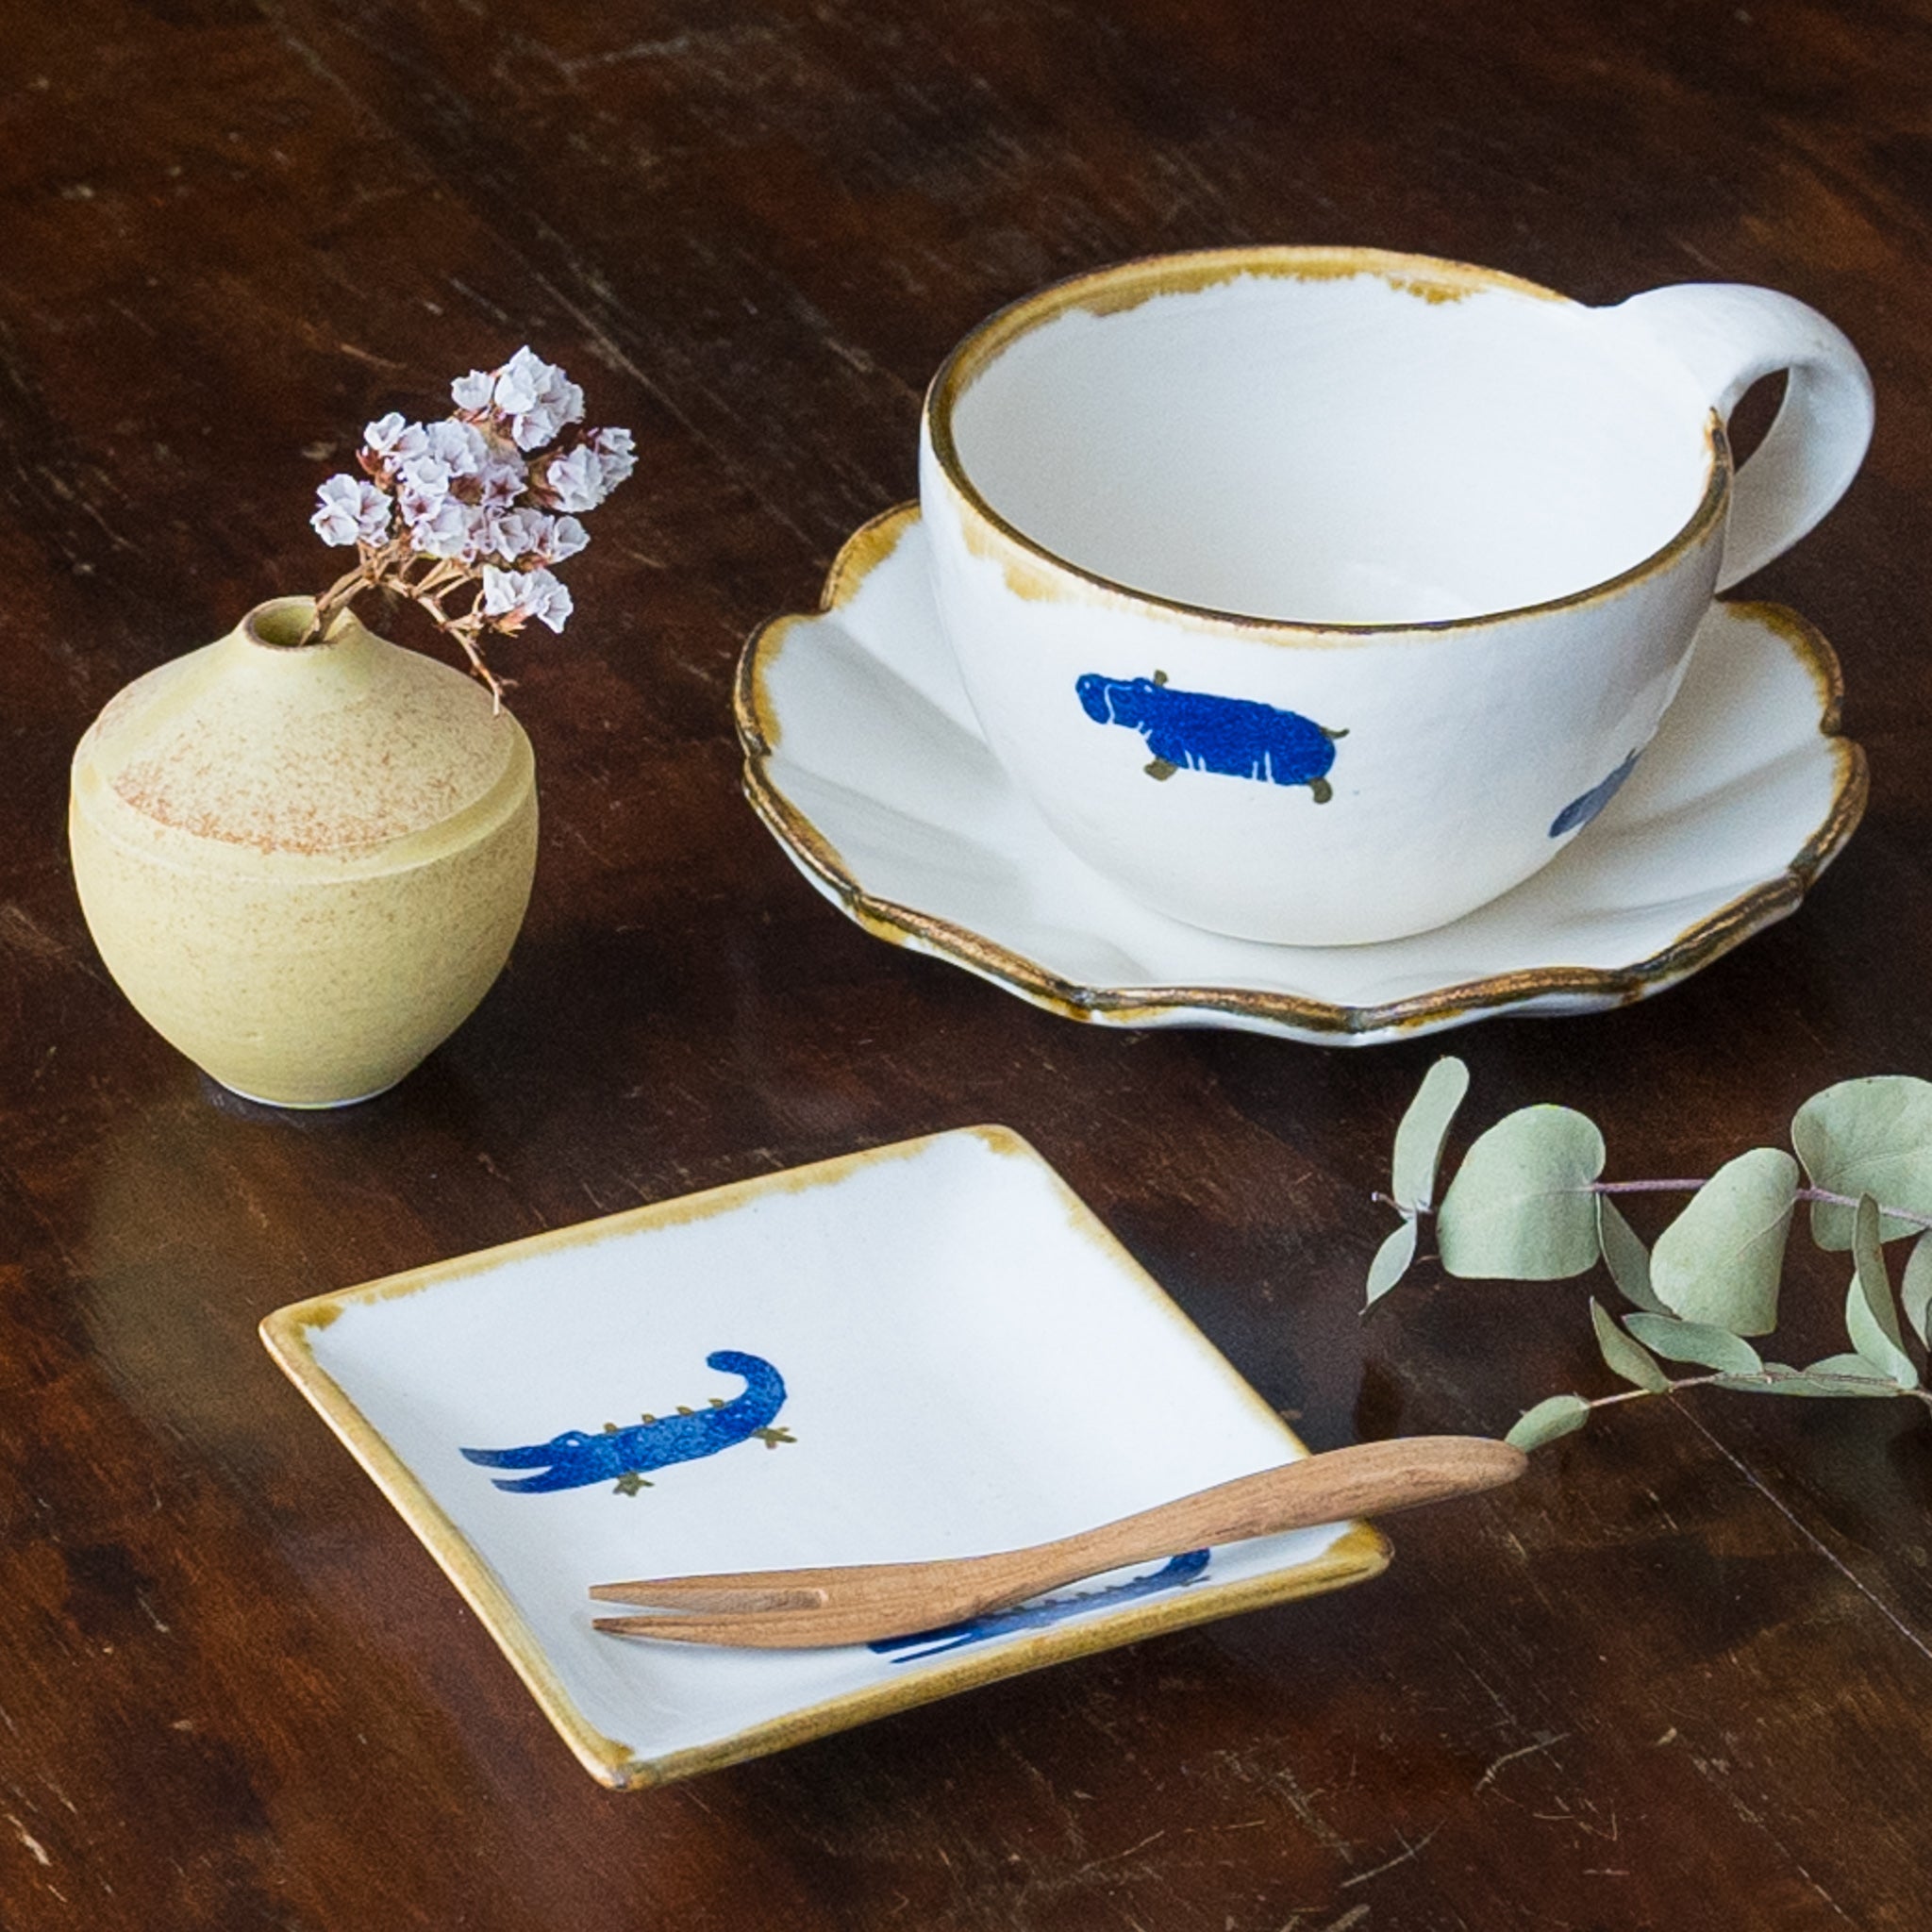 Yasumi Koubou’s Japanese paper dyed animal series tableware for enjoying tea time